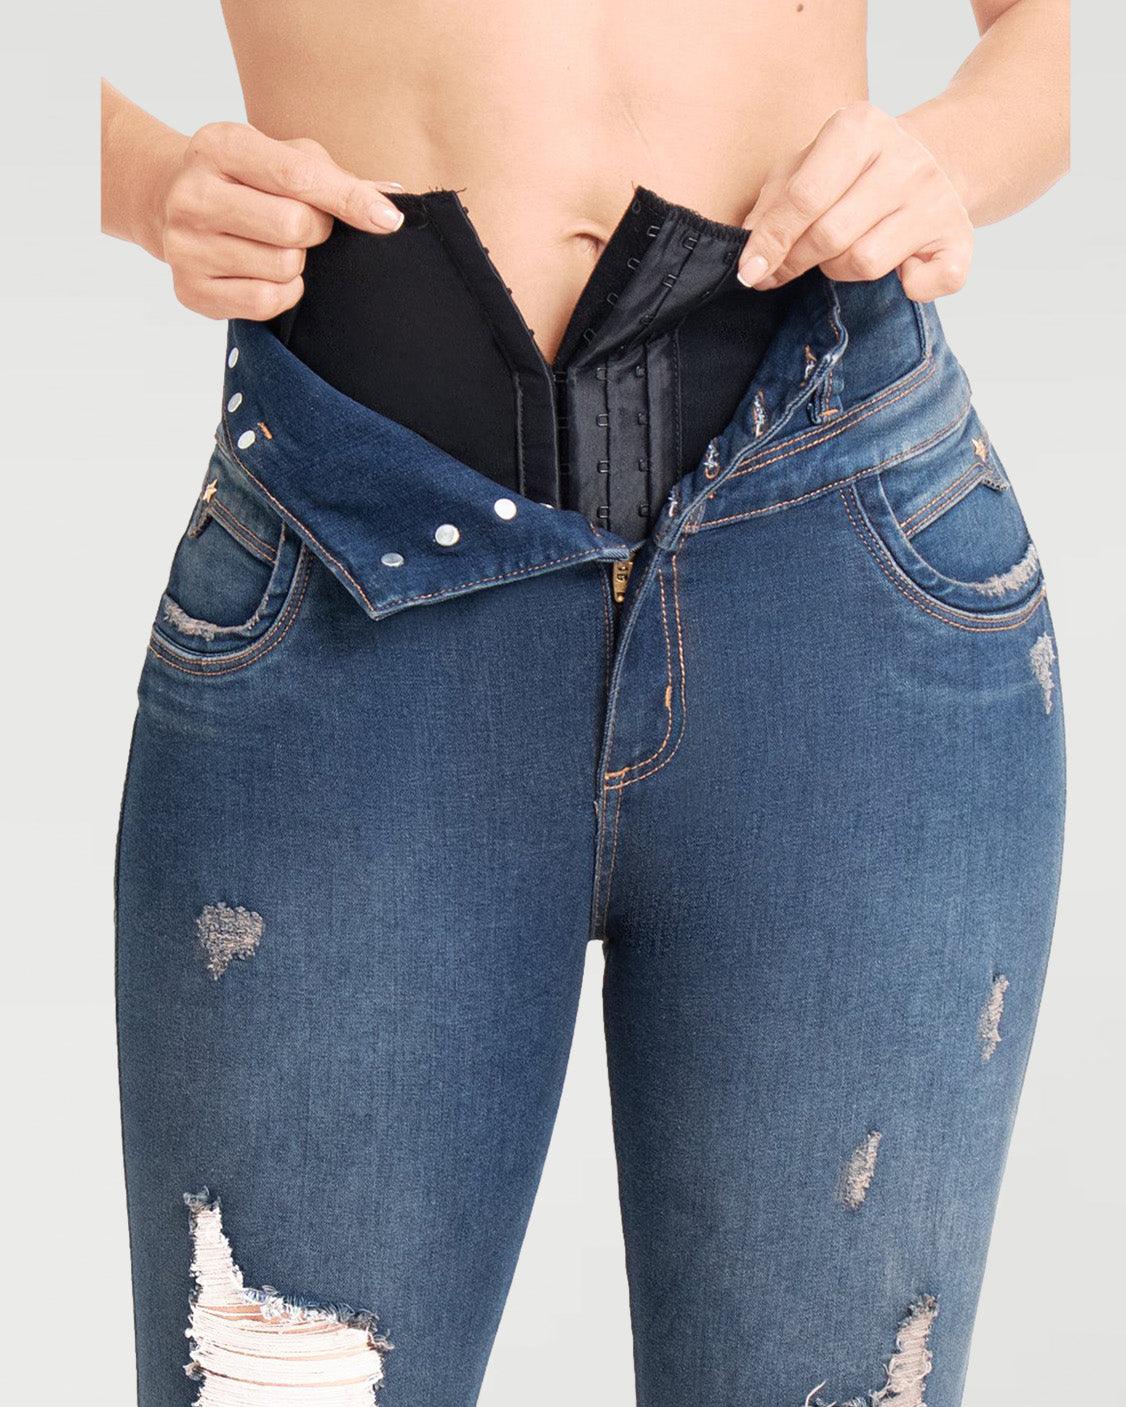 jeans con faka interna orma superrrr🤤🤤🤤🤤🤤💯 disponible todas las